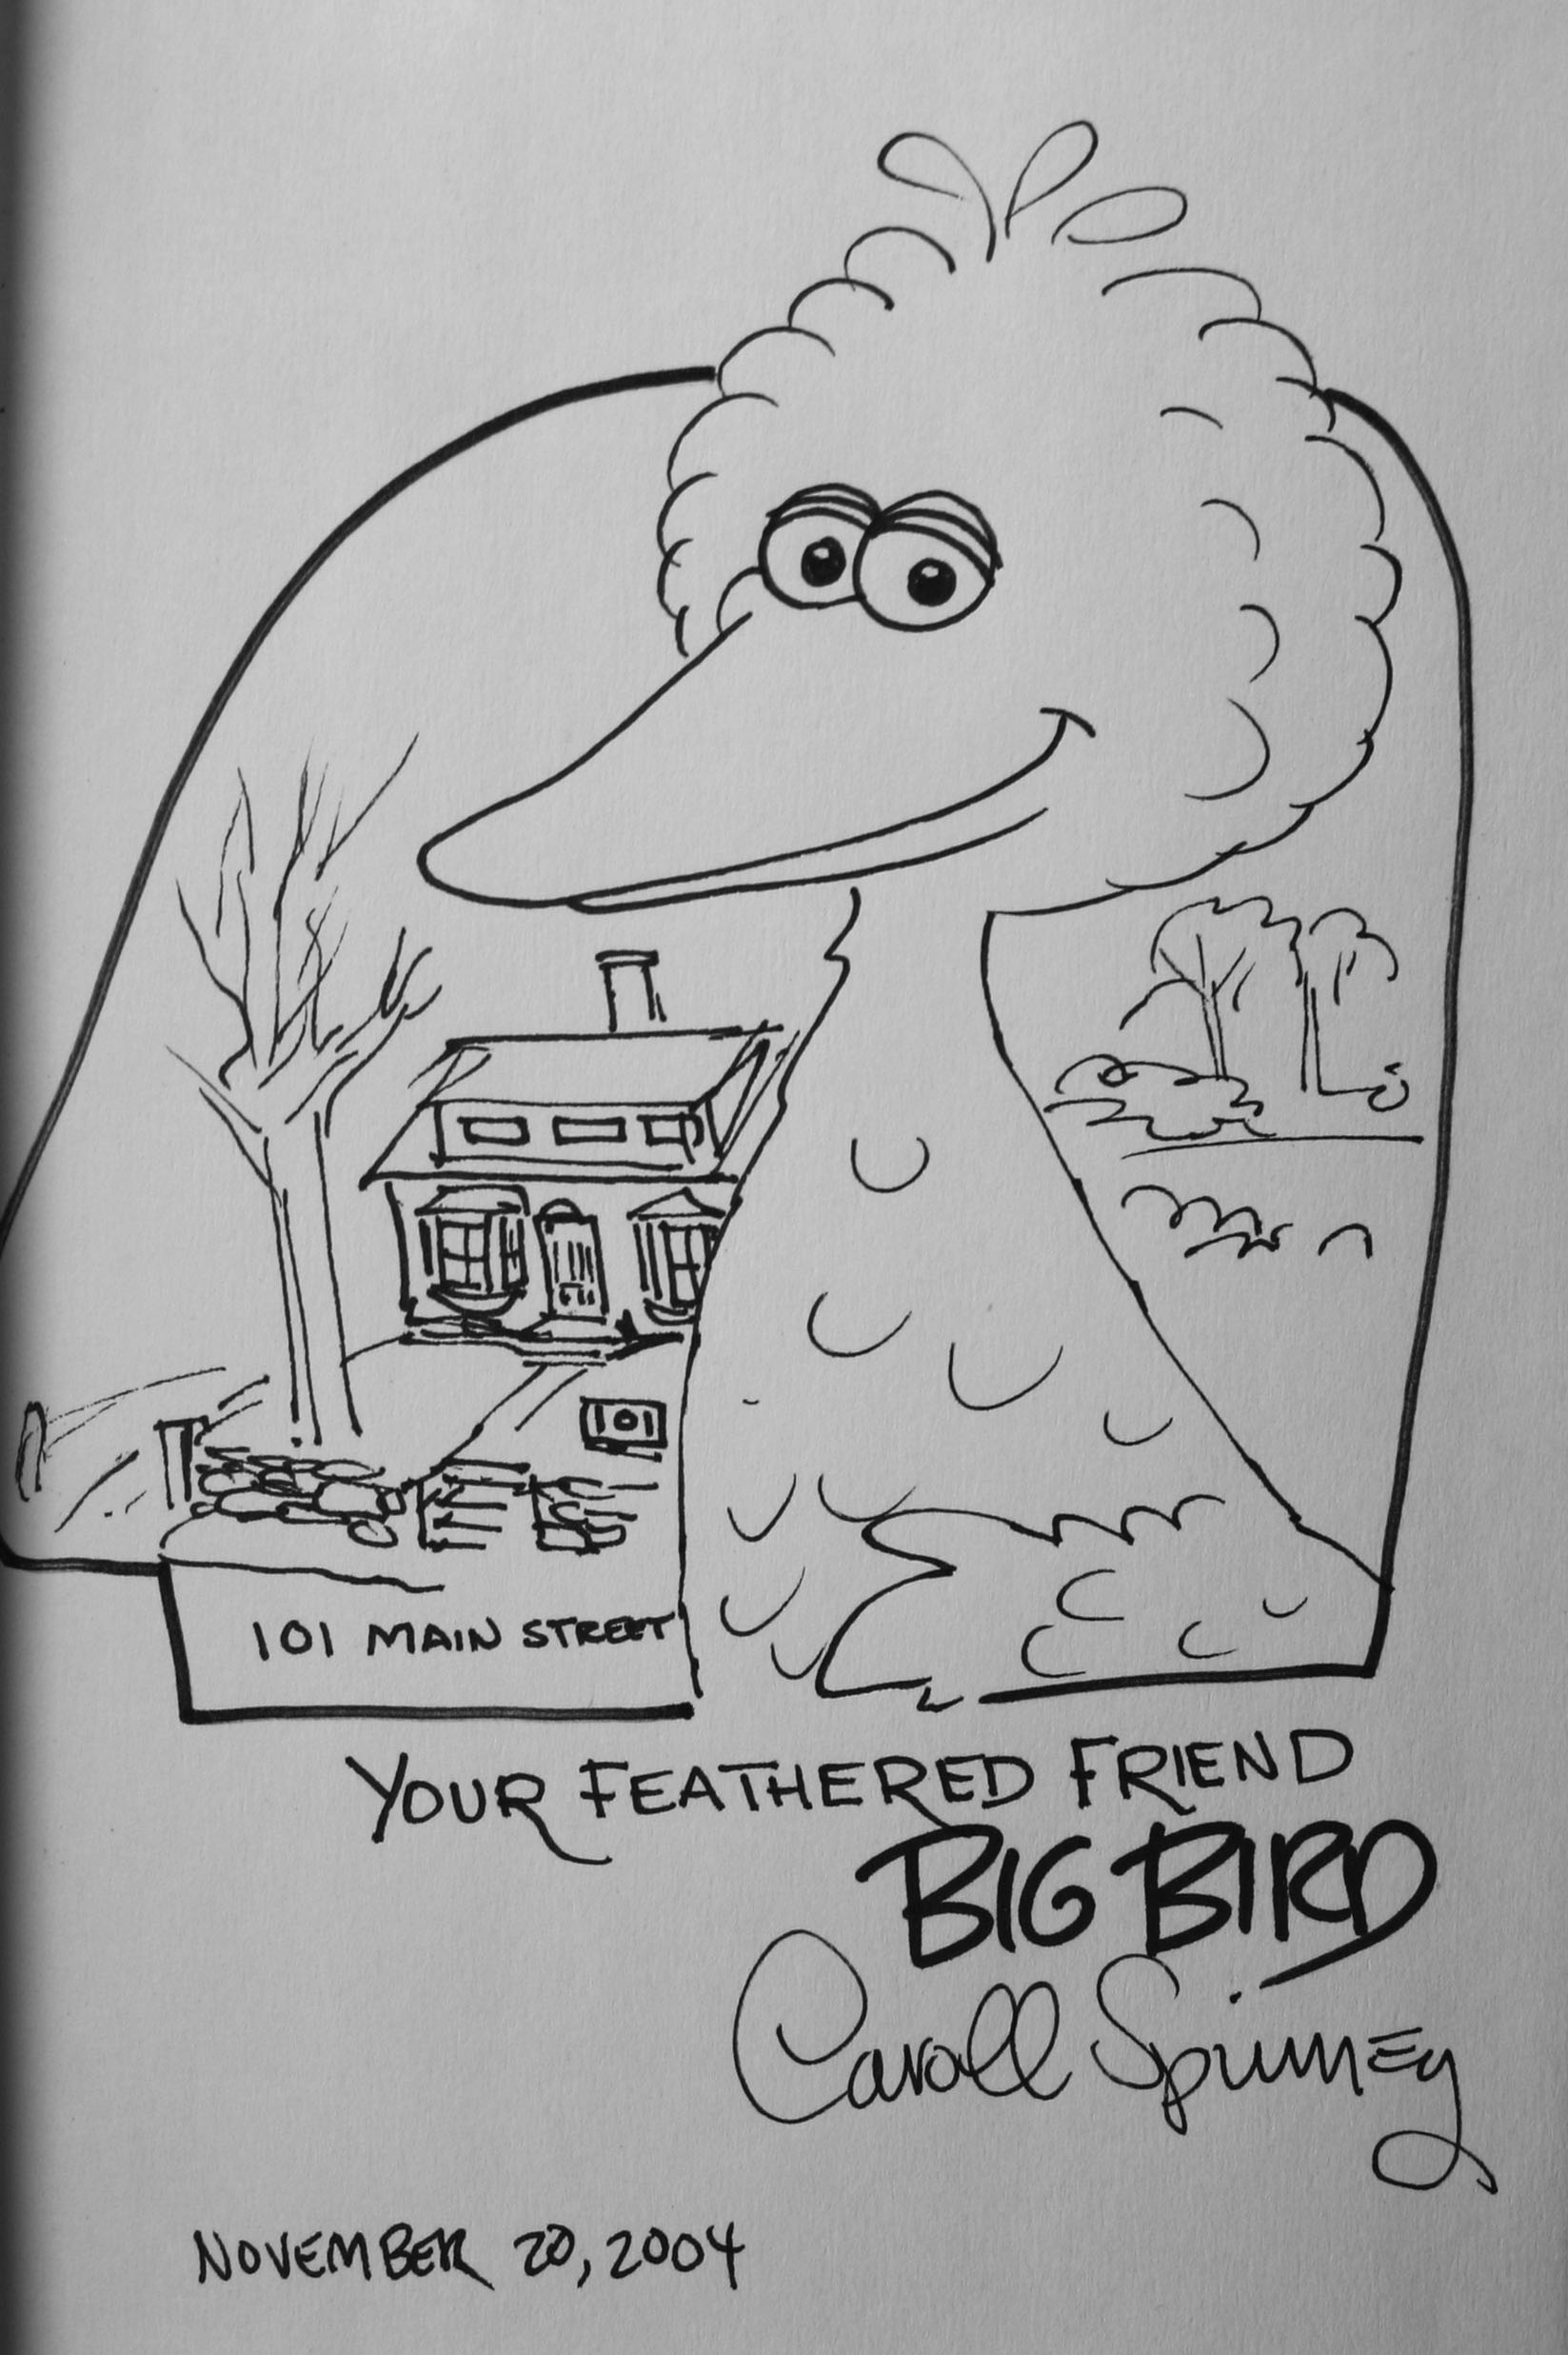 My friend big bird the national lost mitten registry